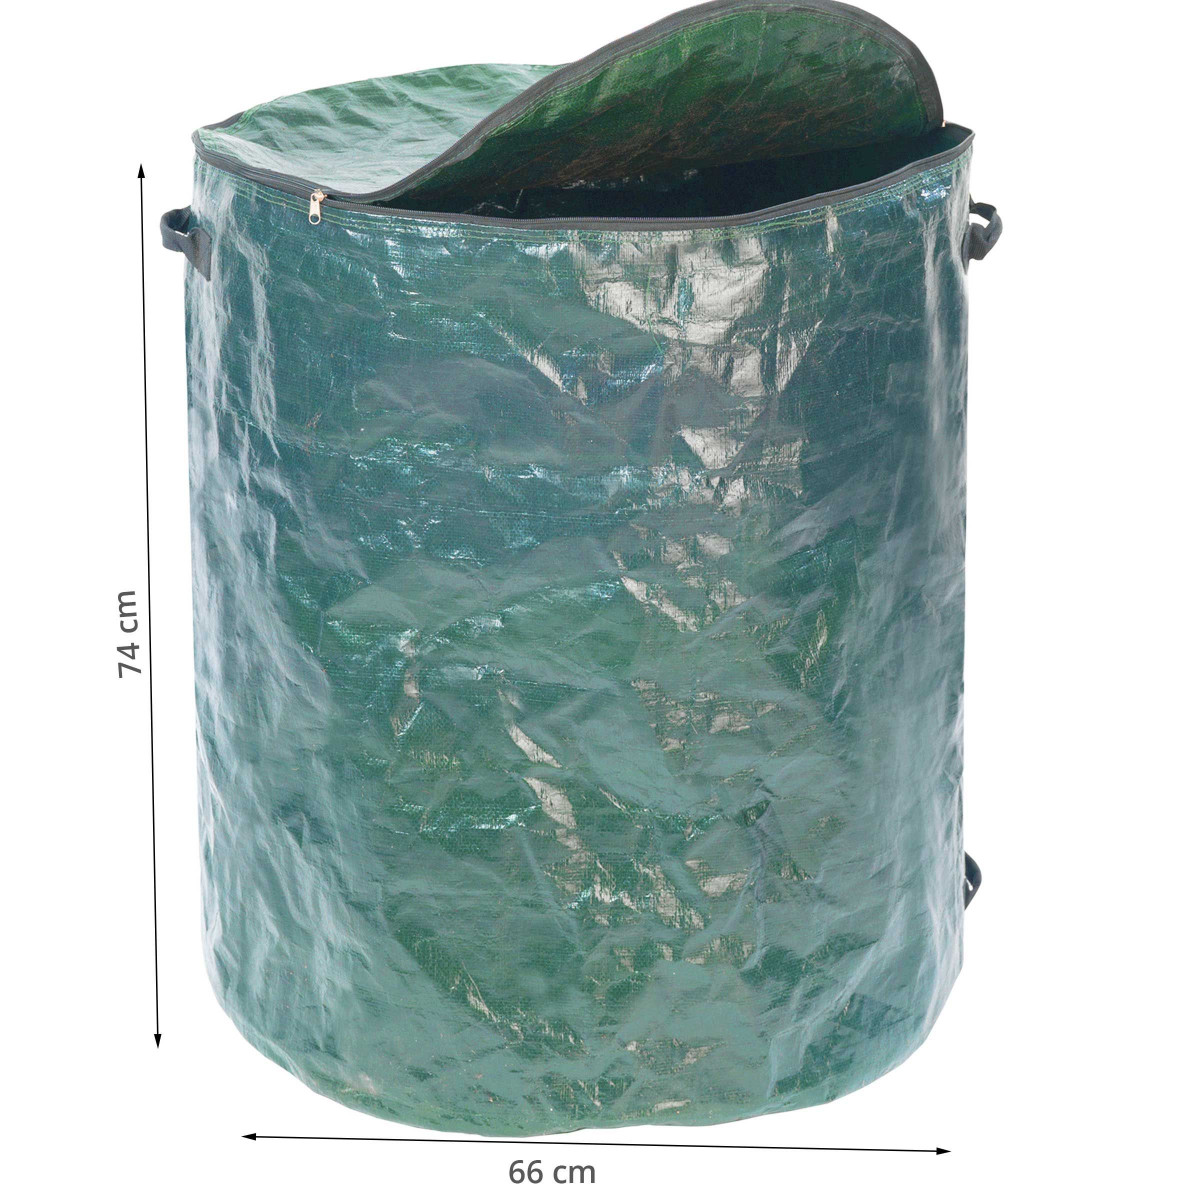 Sac déchets verts réutilisable avec poignées GREENBAG Vert 180L - INTERMAS  - Mr.Bricolage